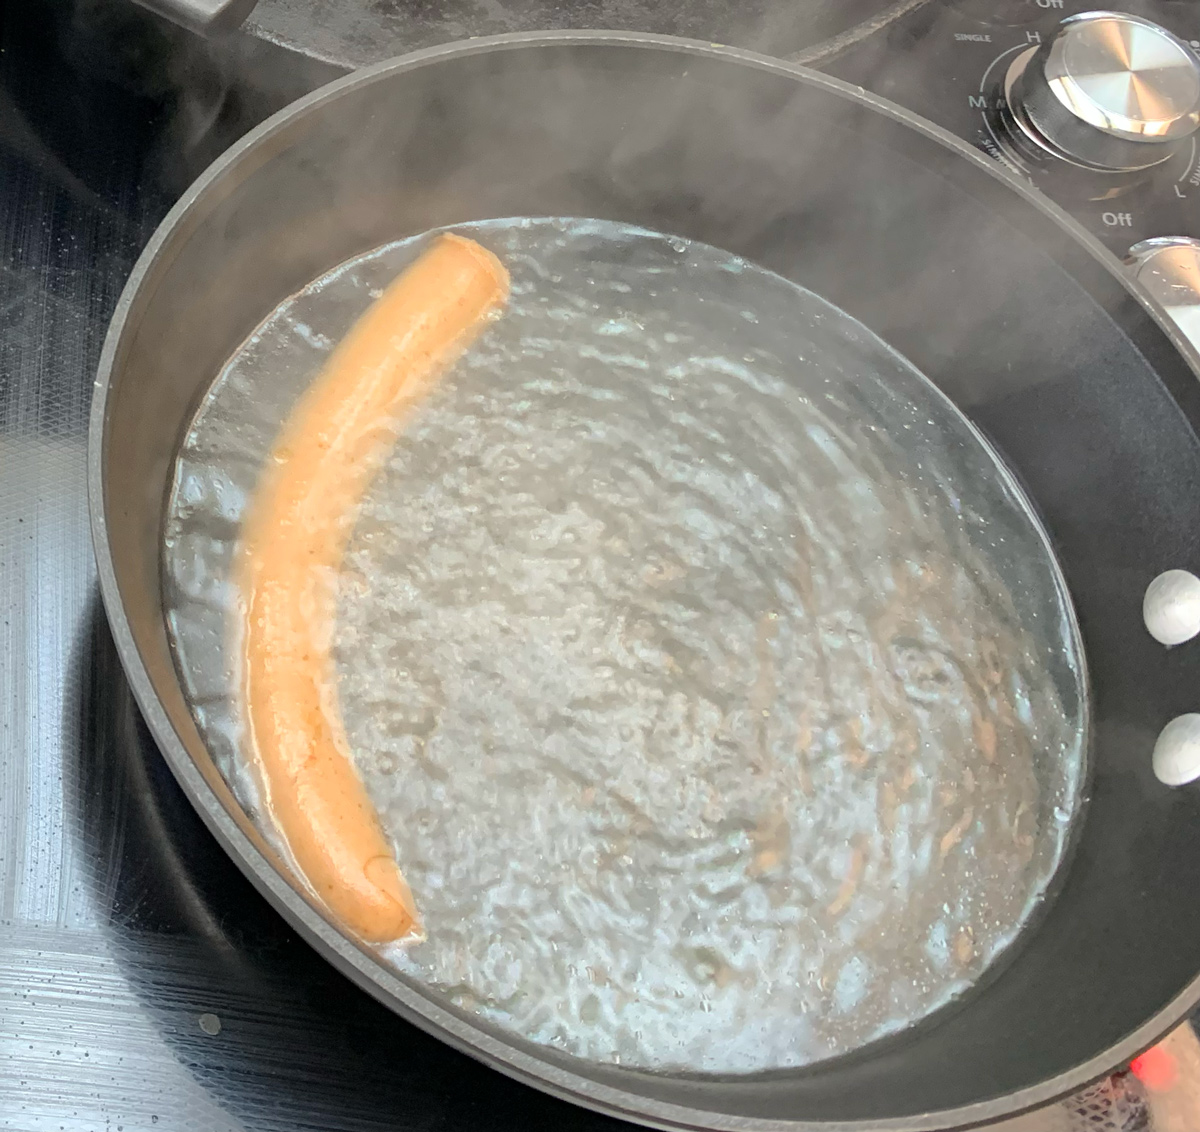 Boiling Dog